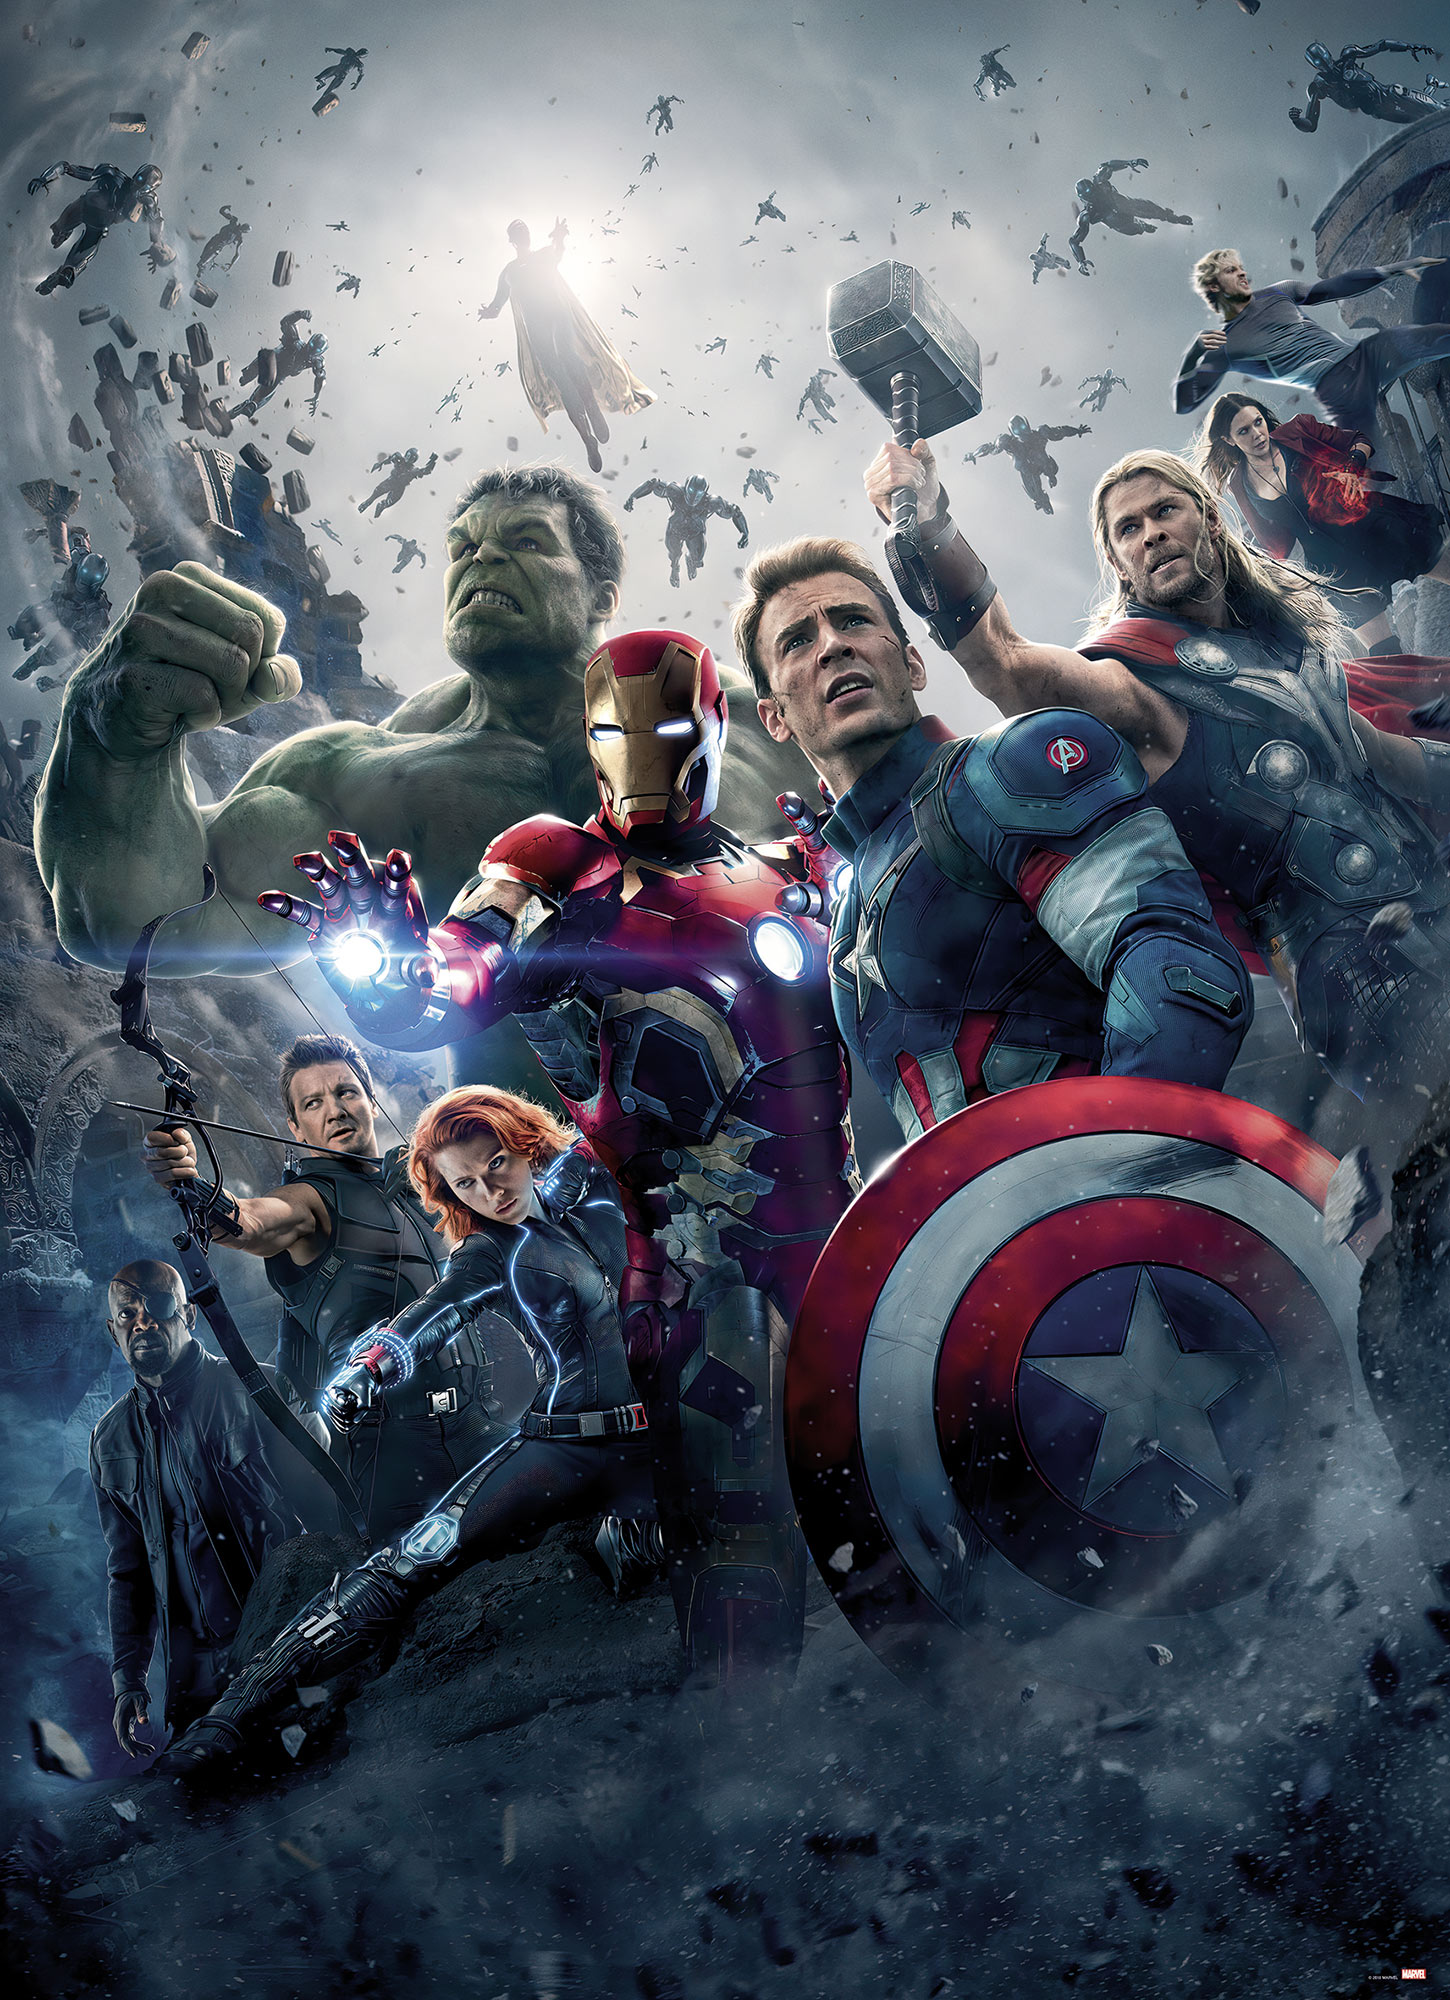 Komar Fototapete "Avengers Age of Ultron Movie Poster" von Komar